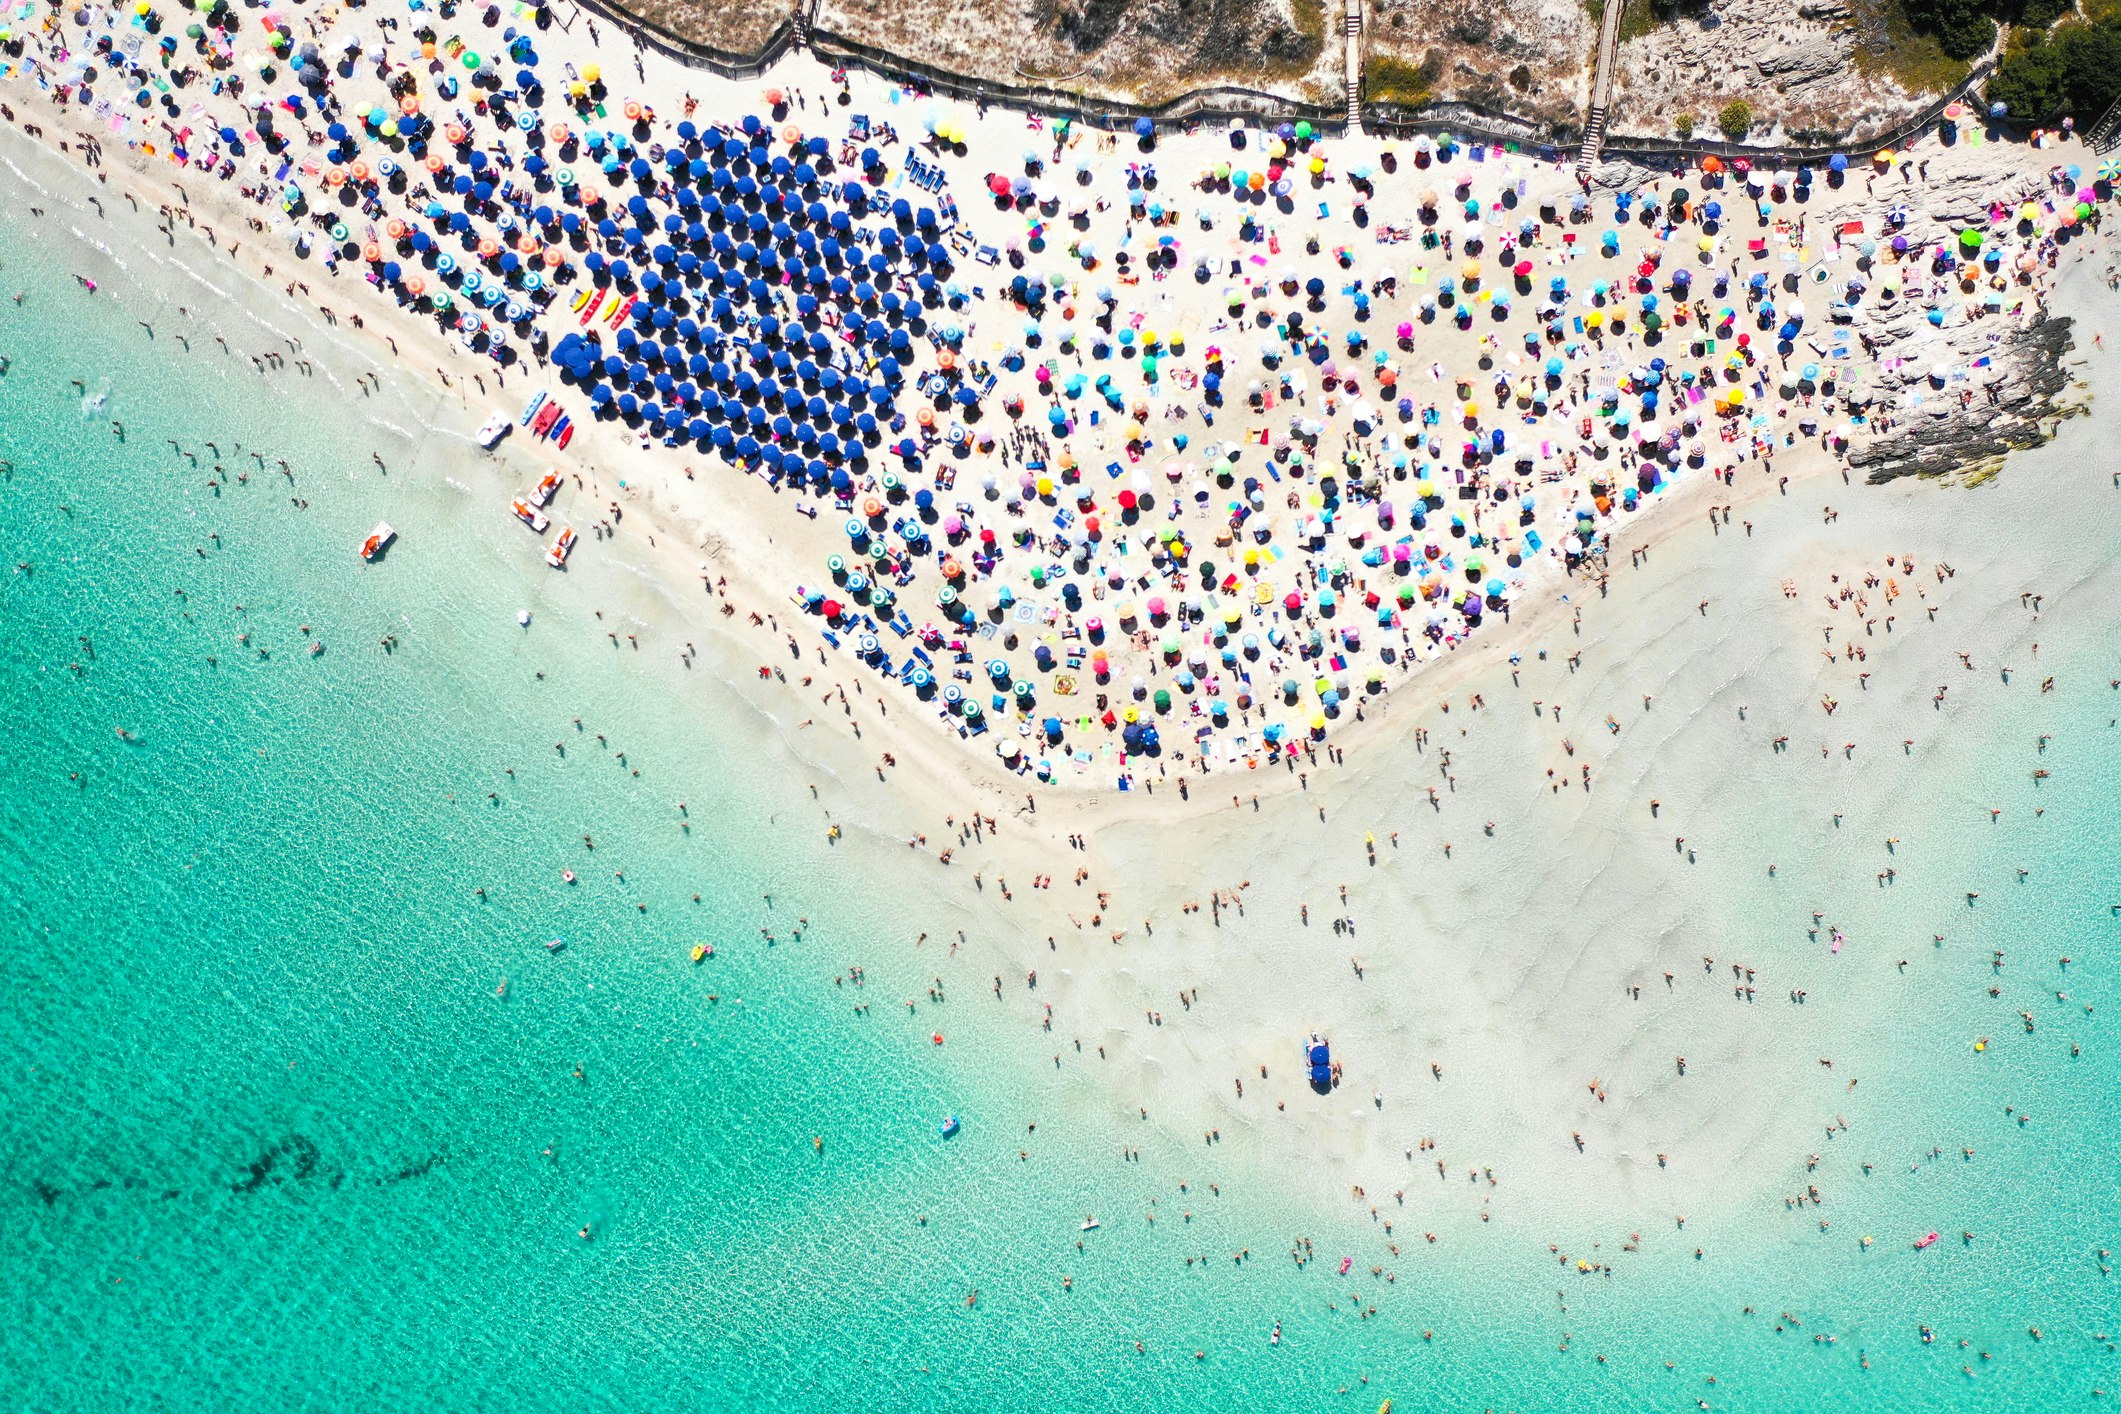 Spiaggia Della Pelosa.jpg